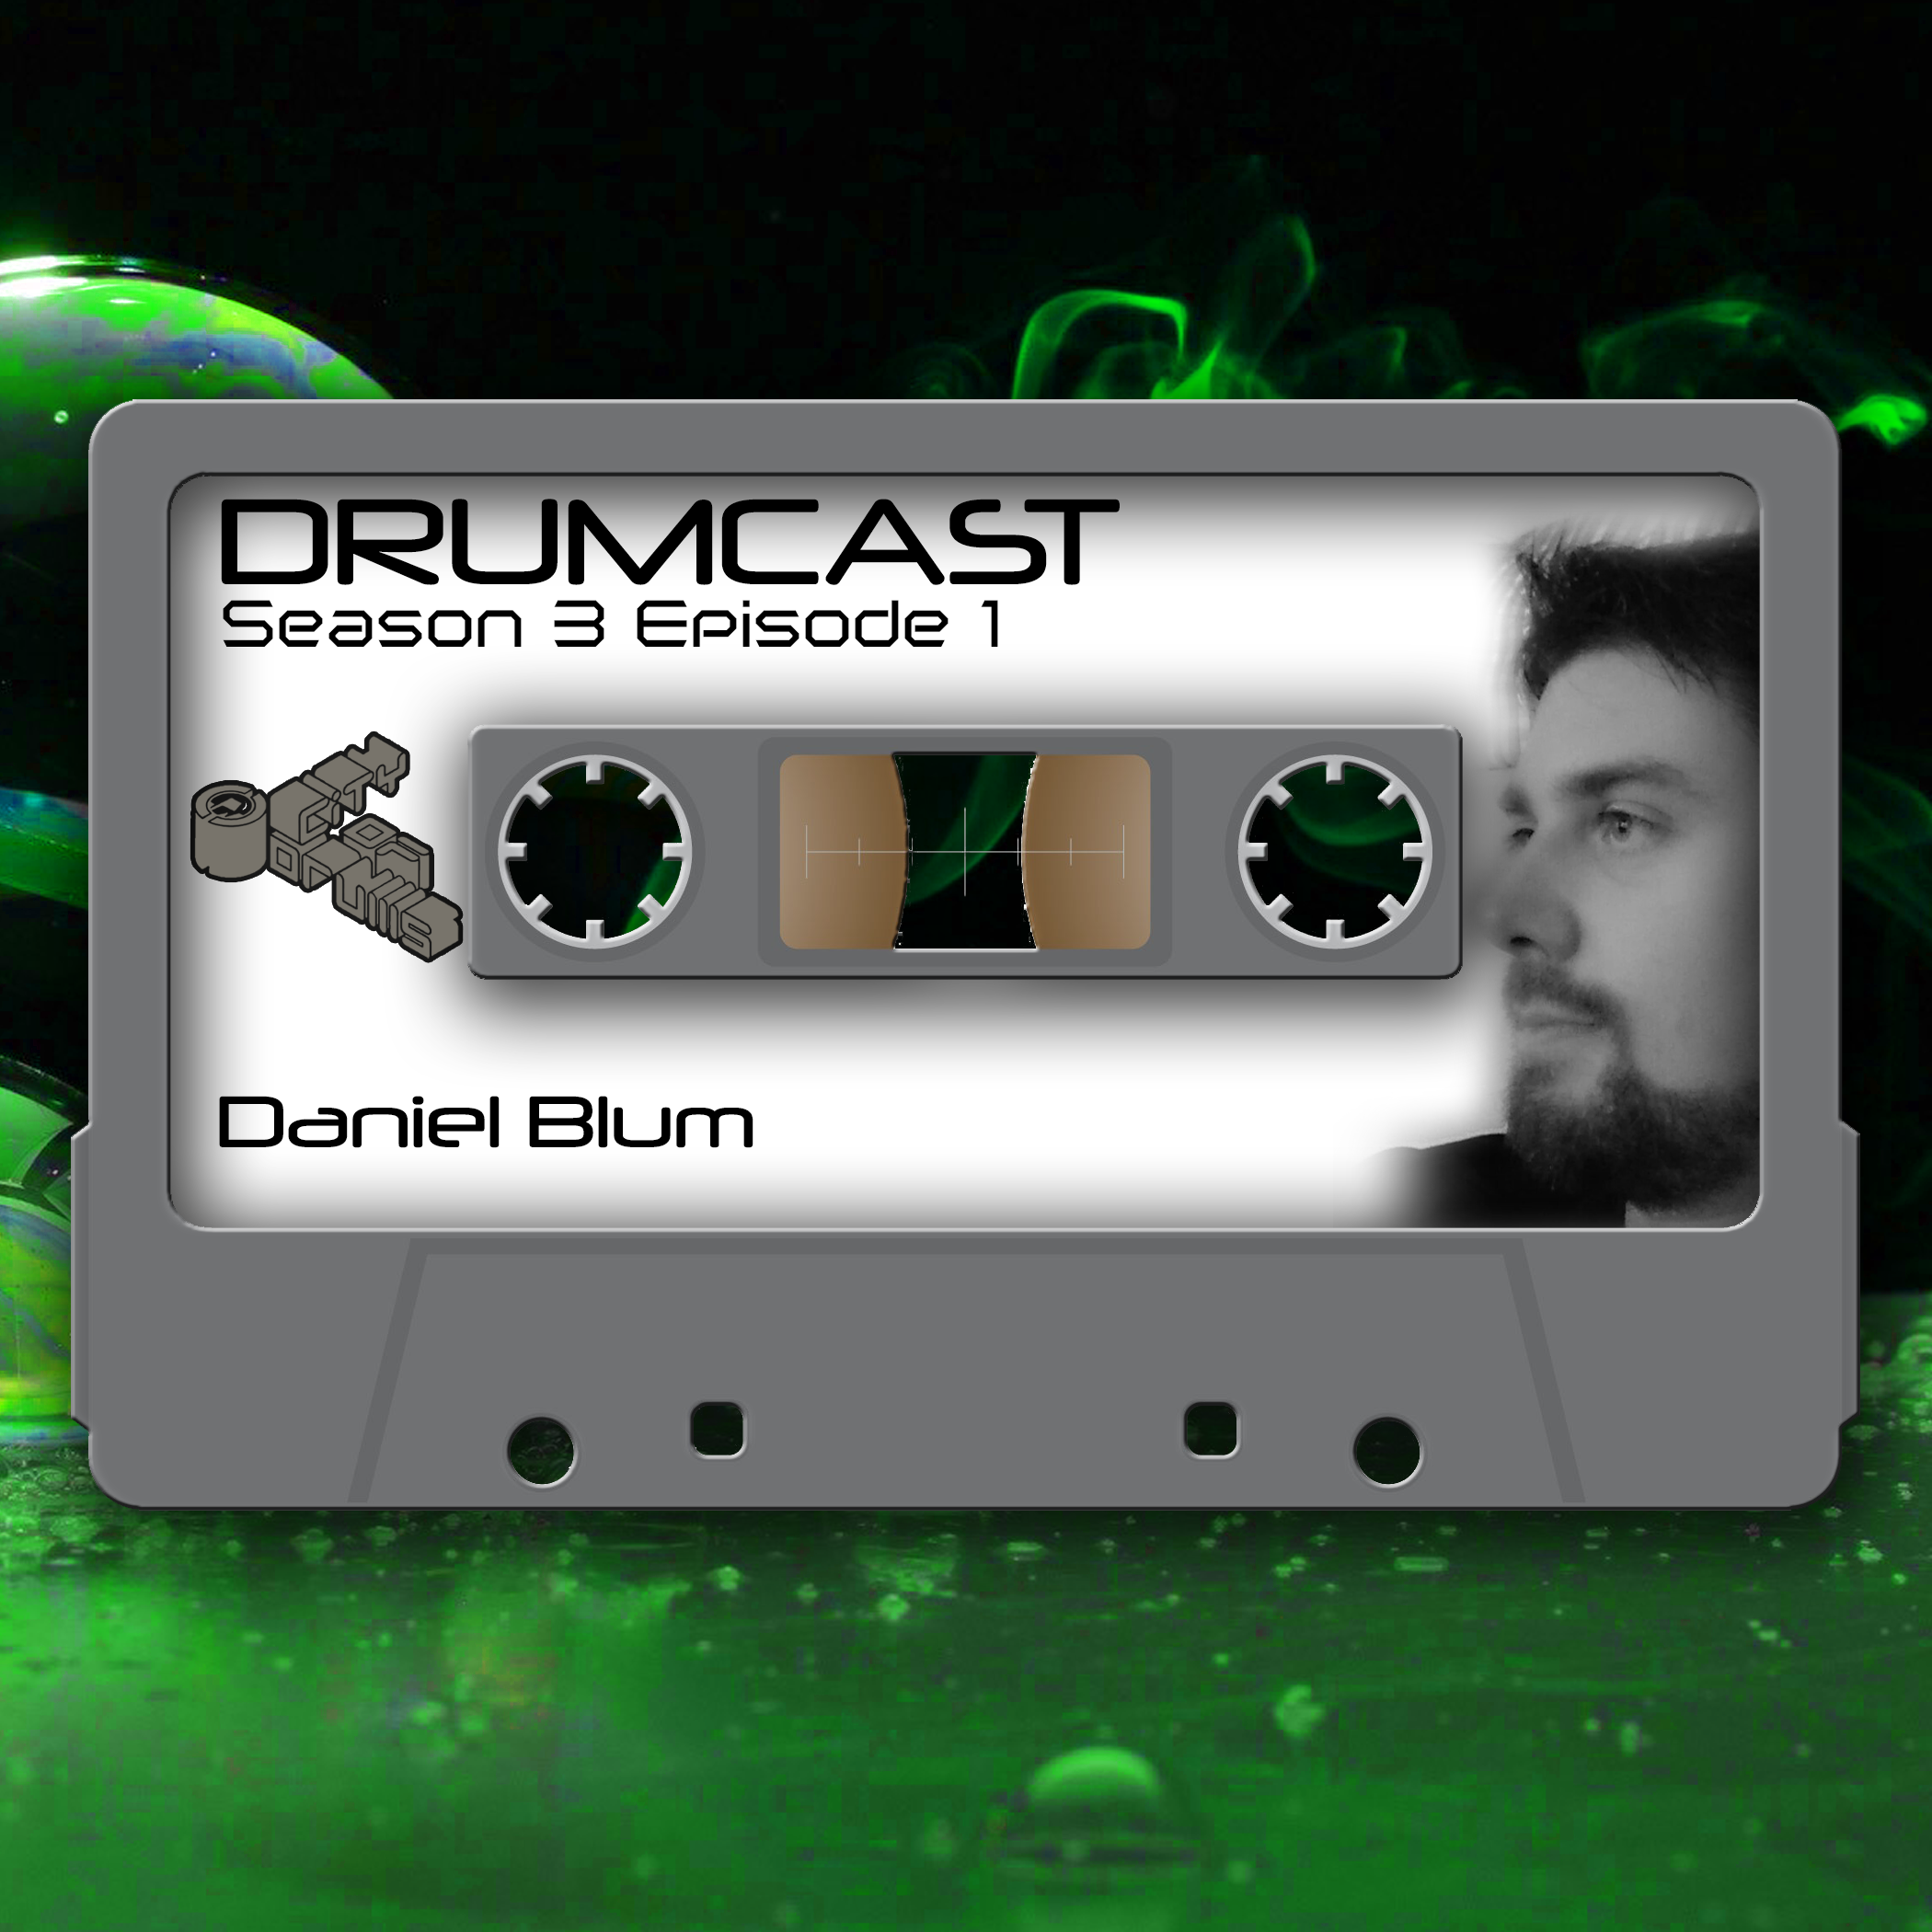 DRUMCAST Season 3 Episode 1 mit Daniel Blum! 9